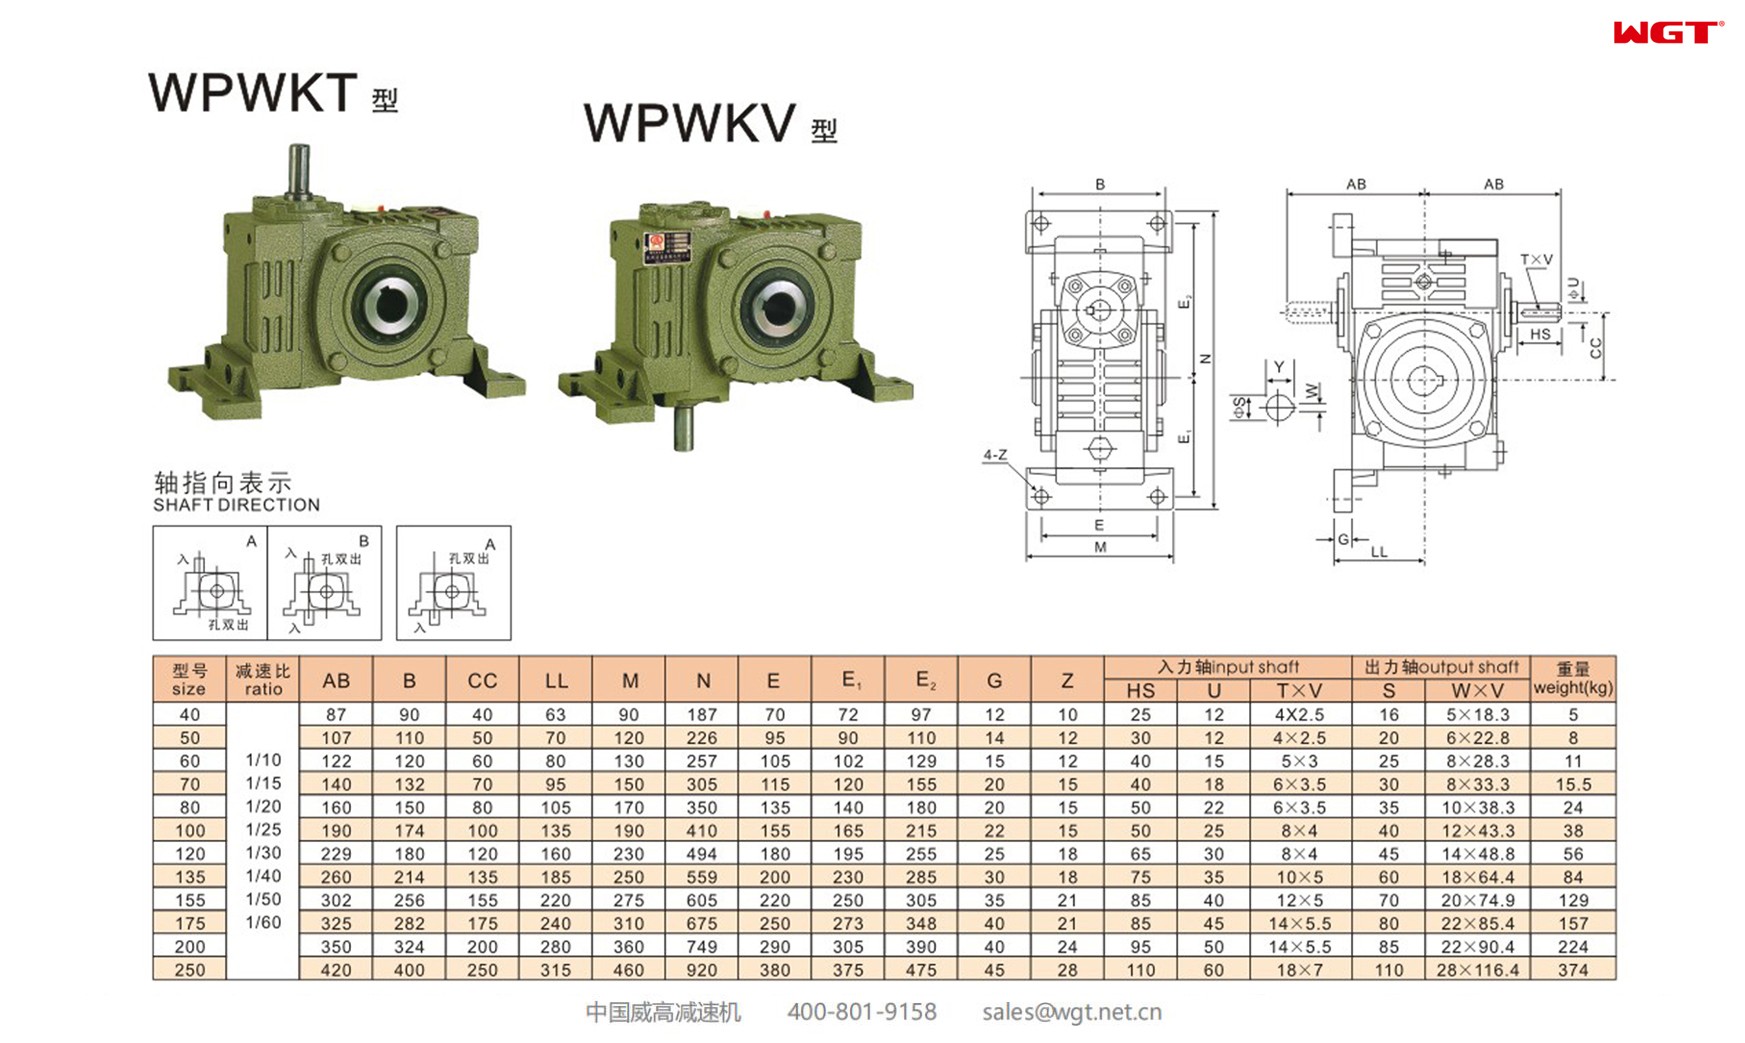 WPWKT120 worm gear reducer universal speed reducer